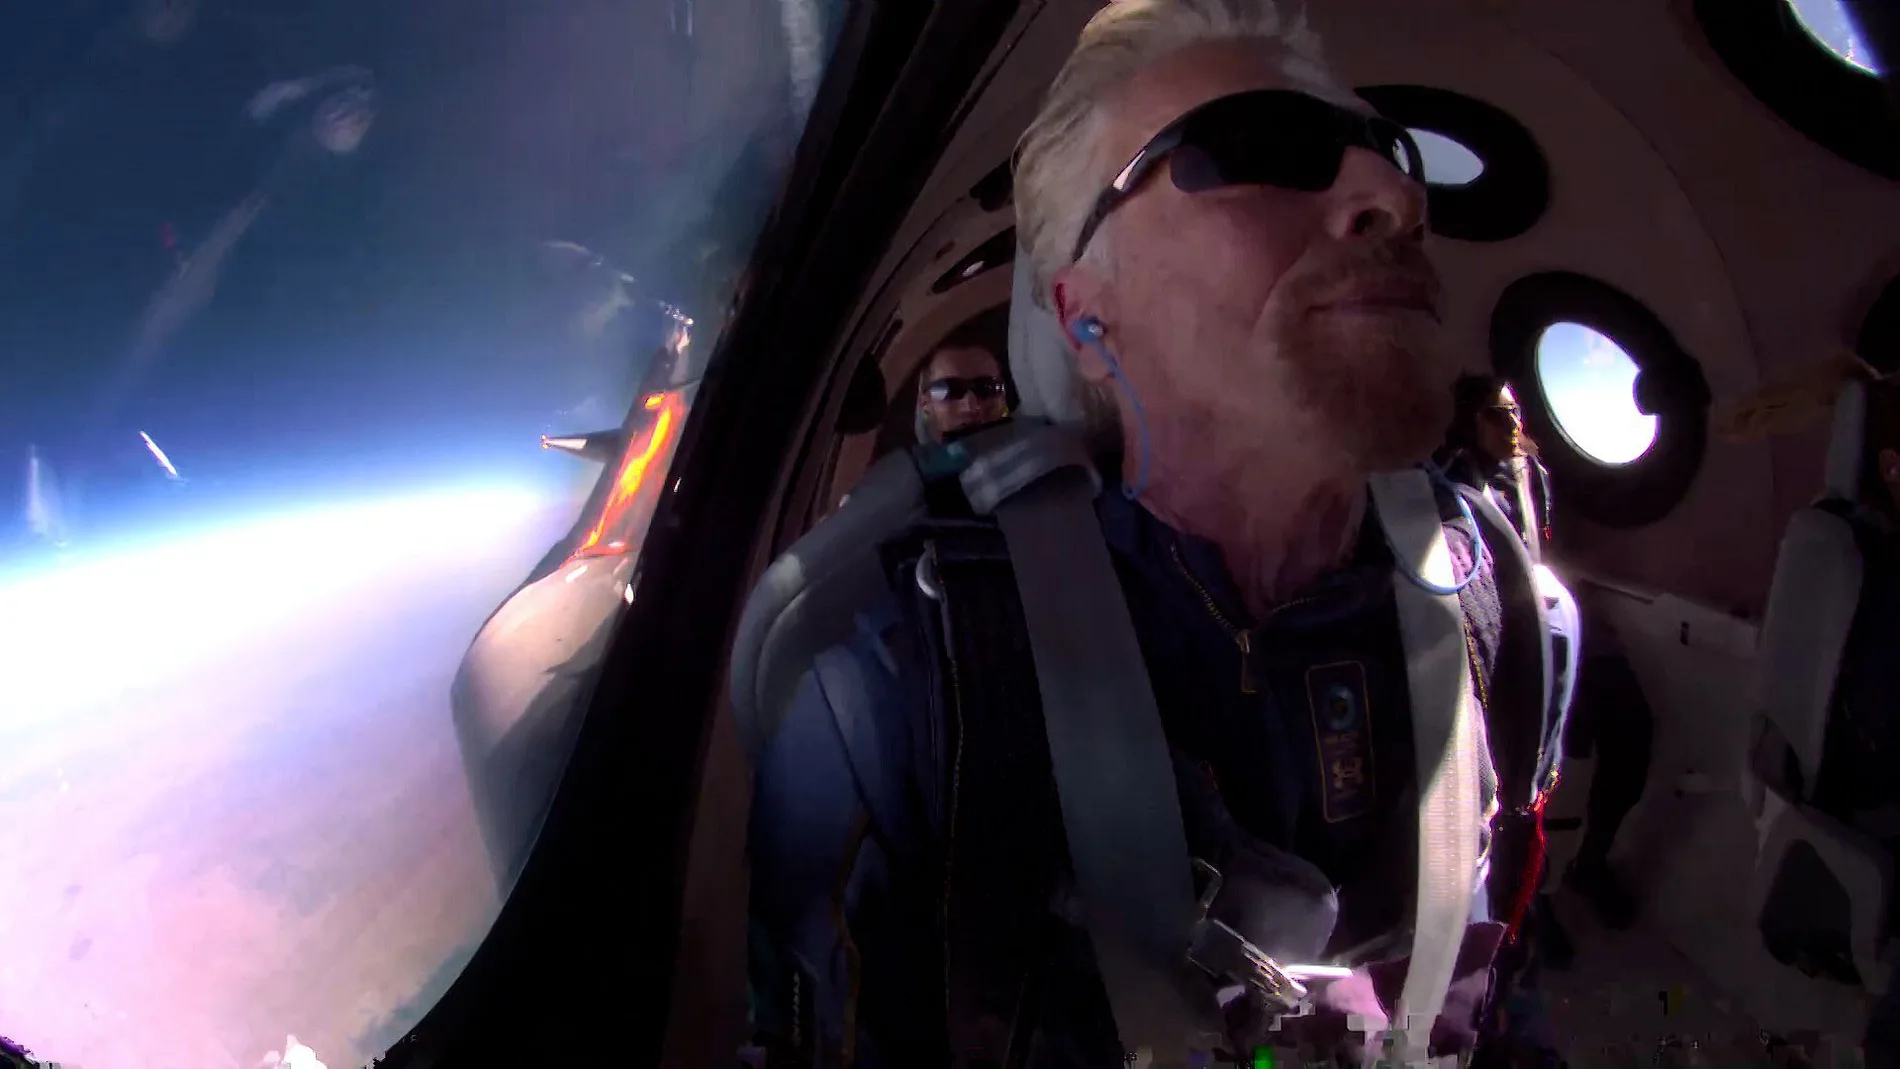 "Ha sido mágico": así define Richard Branson su primer viaje al espacio con Virgin Galactic